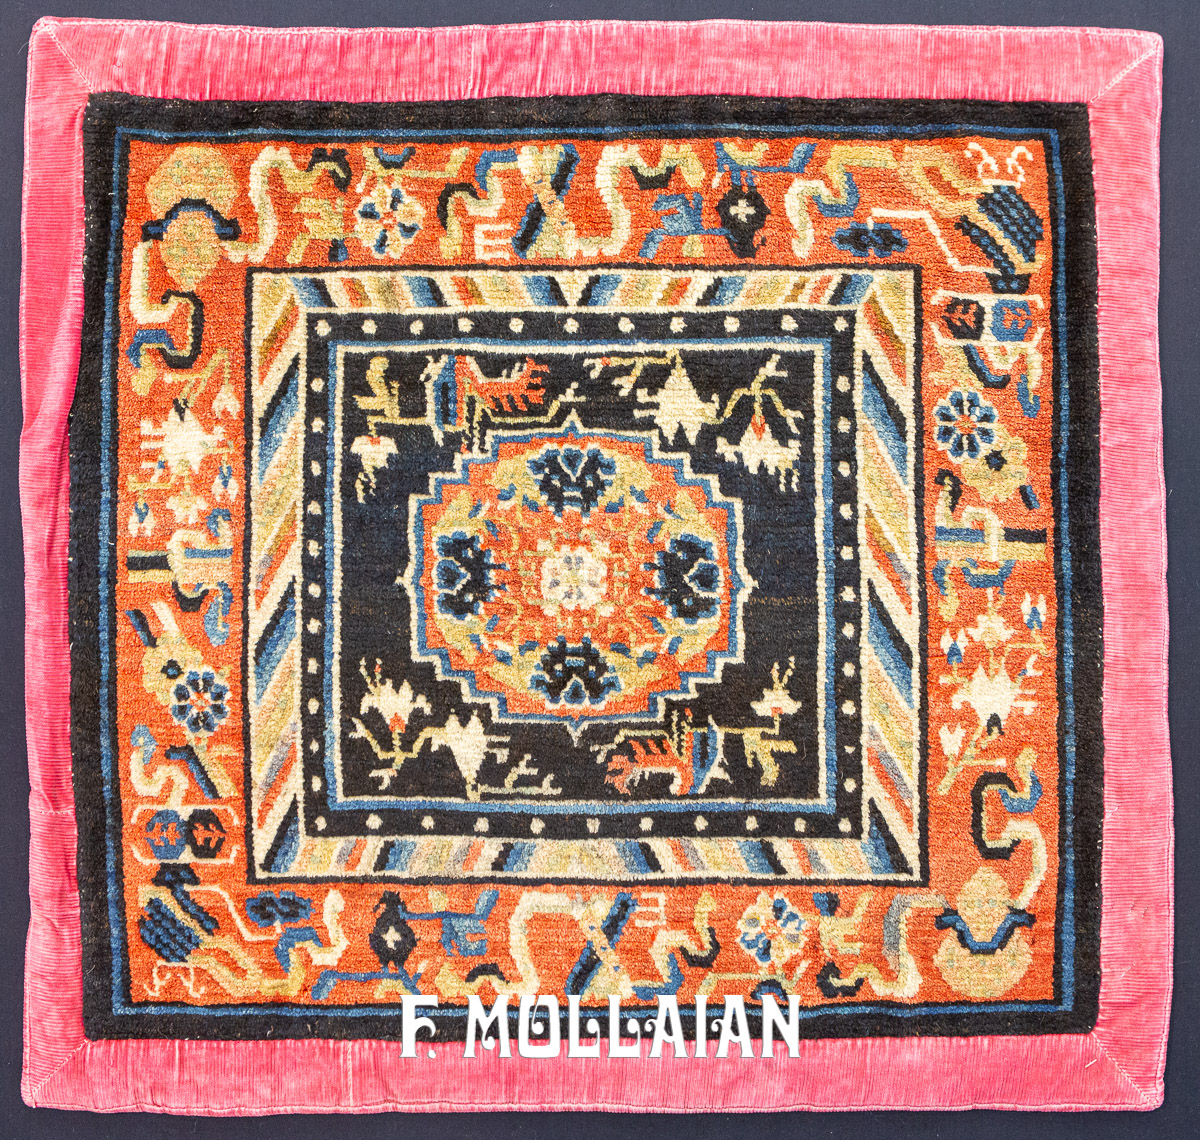 Antico Tappeto Tibetano da Meditazione annodato a mano n°:29855895